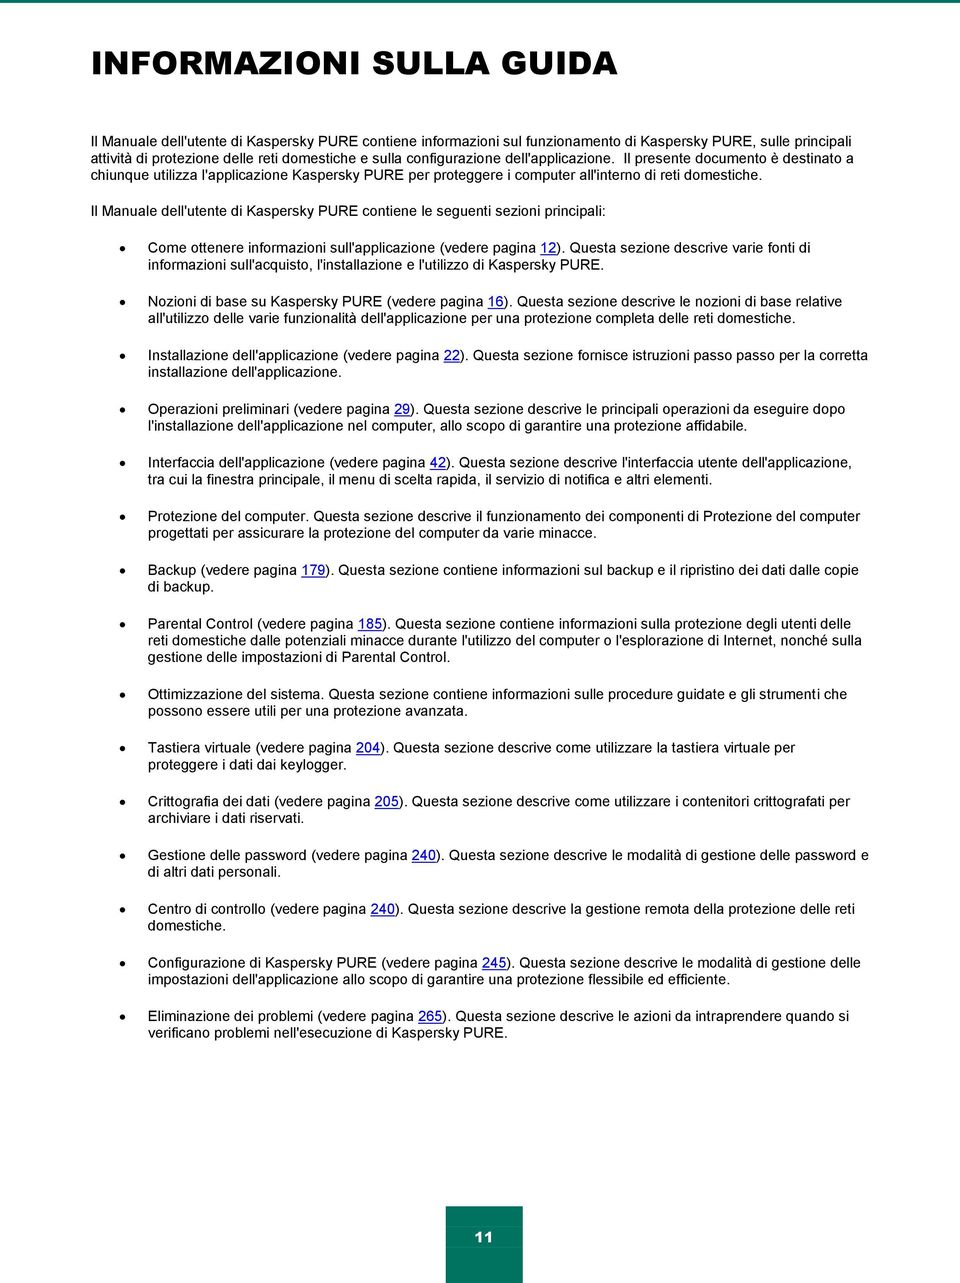 Il Manuale dell'utente di Kaspersky PURE contiene le seguenti sezioni principali: Come ottenere informazioni sull'applicazione (vedere pagina 12).